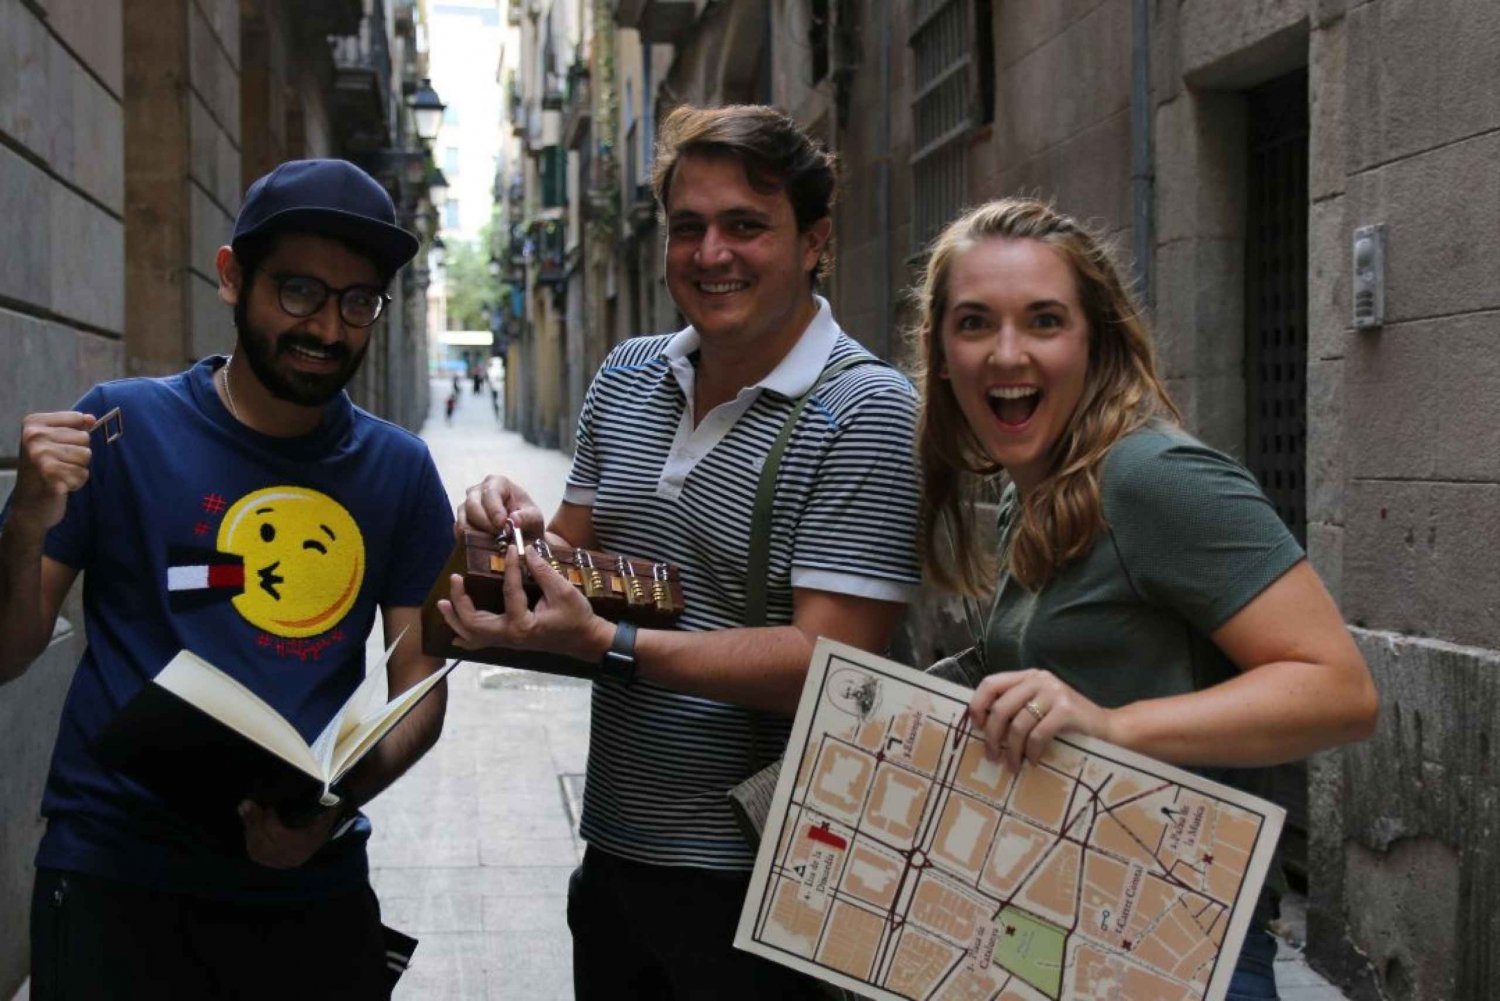 Barcelona: 'Cerdàs hemmelighet' - vandringstur med skattejakt